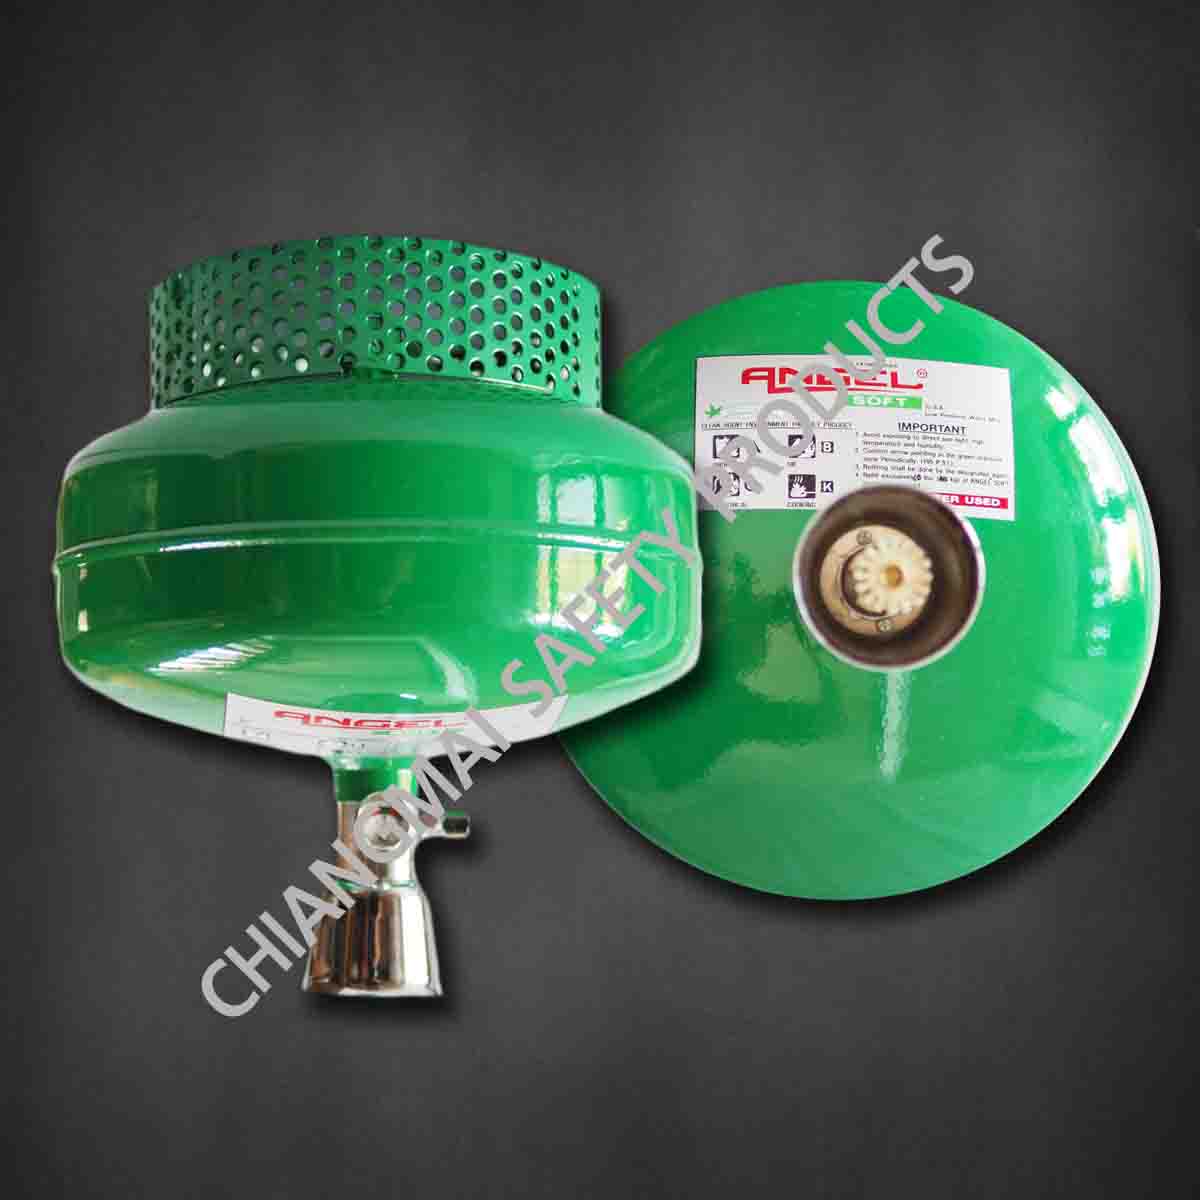 ถังดับเพลิอัตโนมัติ เชียงใหม่ NON CFC สารสะอาด สีเขียว Angel Soft 10ปอนด์ Automatic